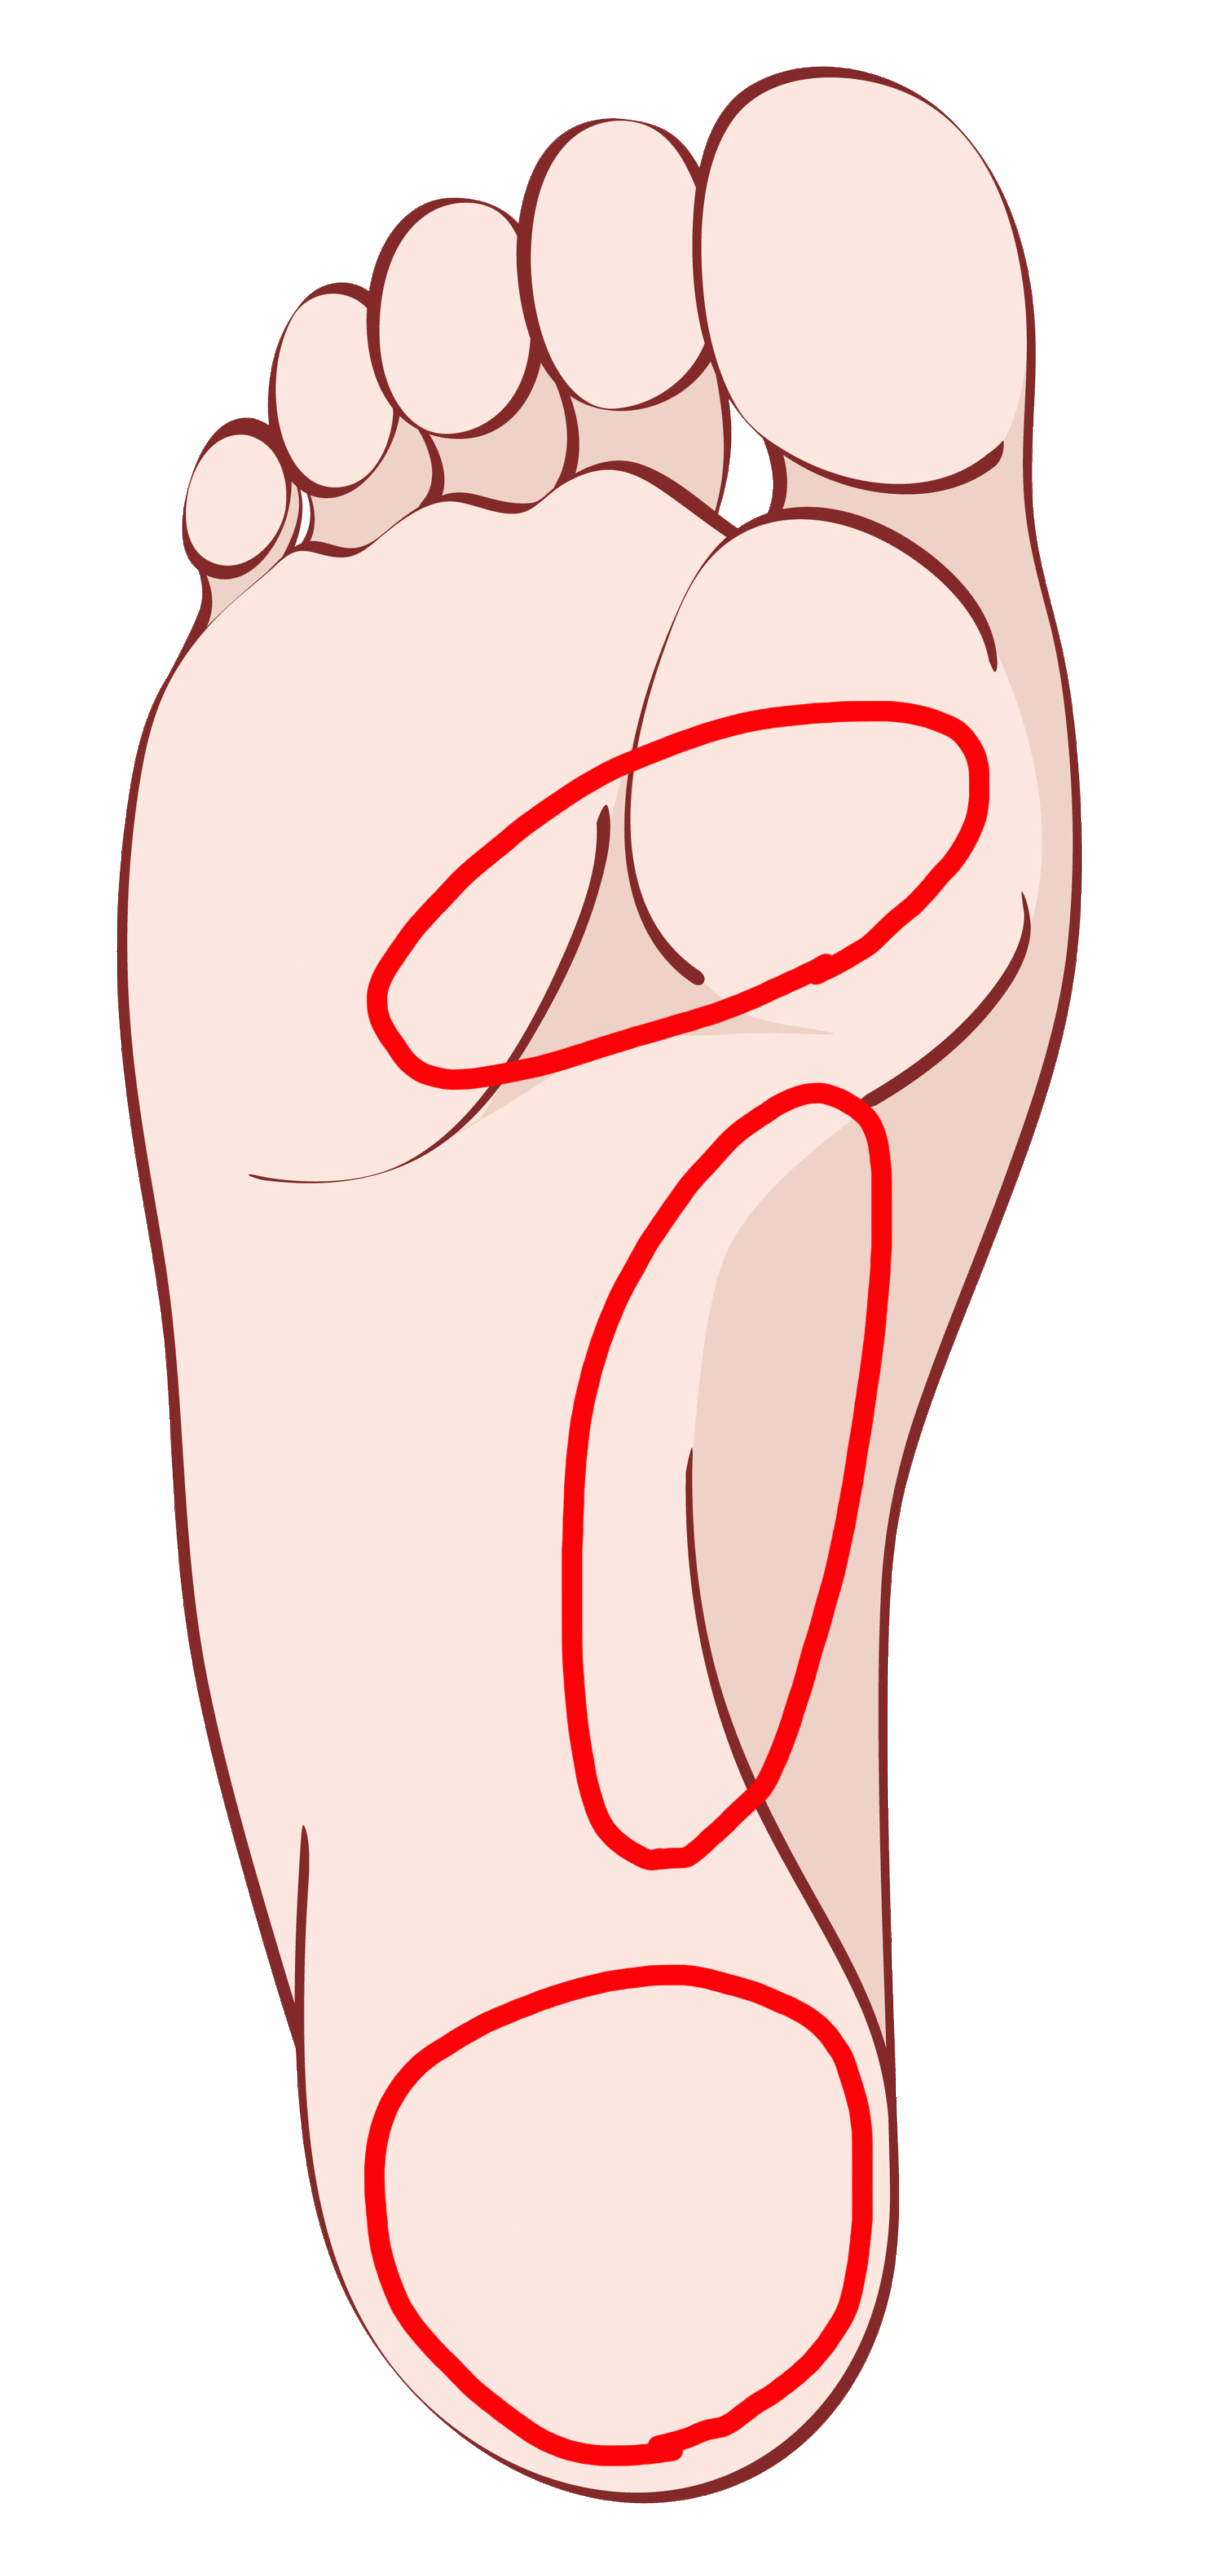 足底筋膜炎の痛みが生じる個所。 かかと部分が最も頻出する箇所となっている。